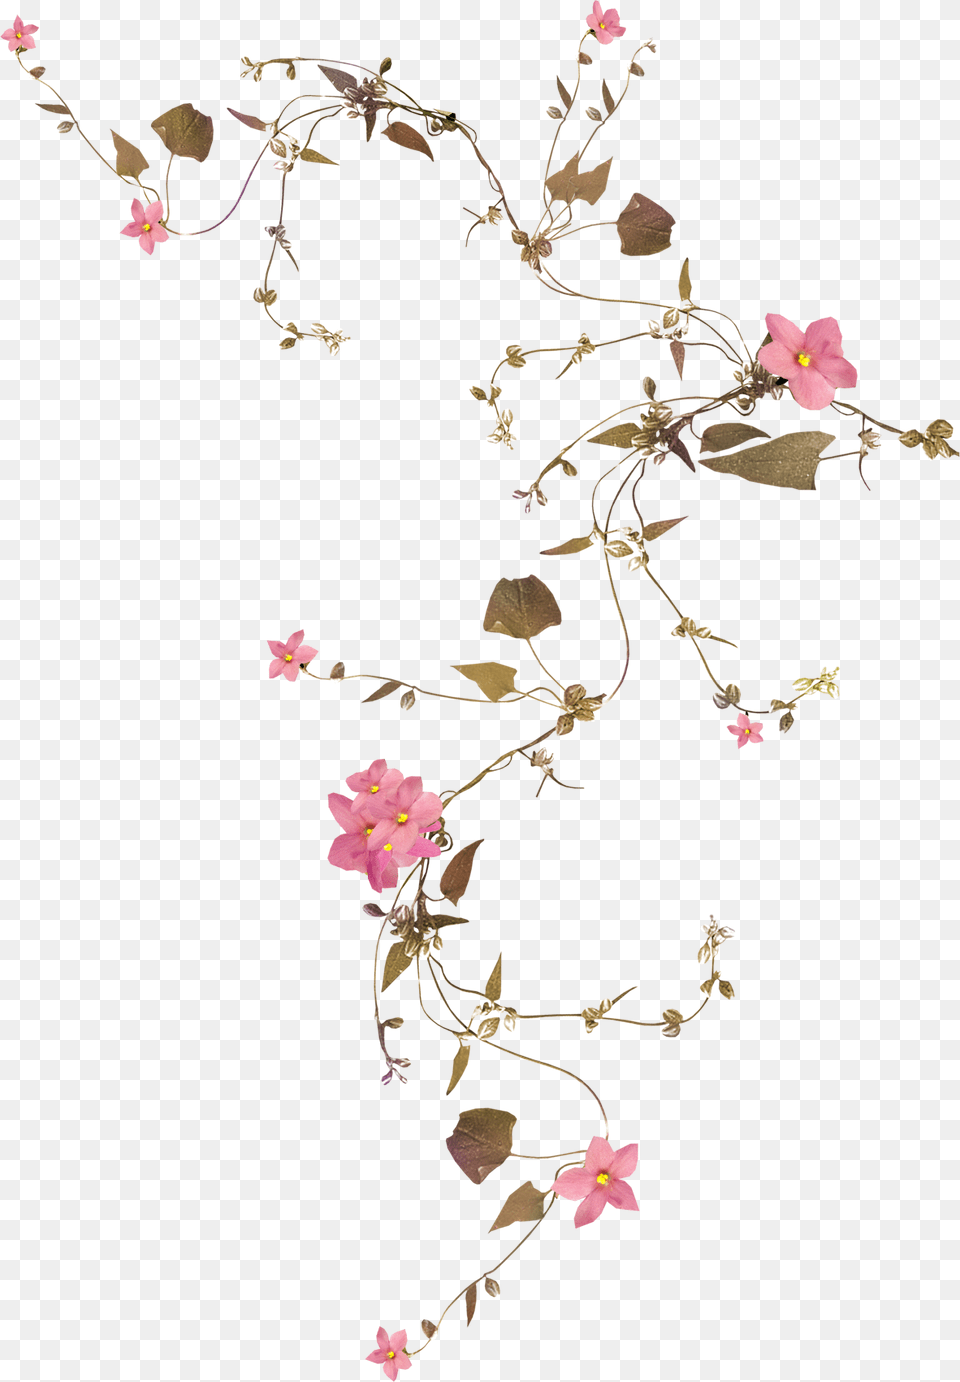 Flower Vine Rose Drawing Flower Vine Transparent Background, Art, Collage, Floral Design, Graphics Free Png